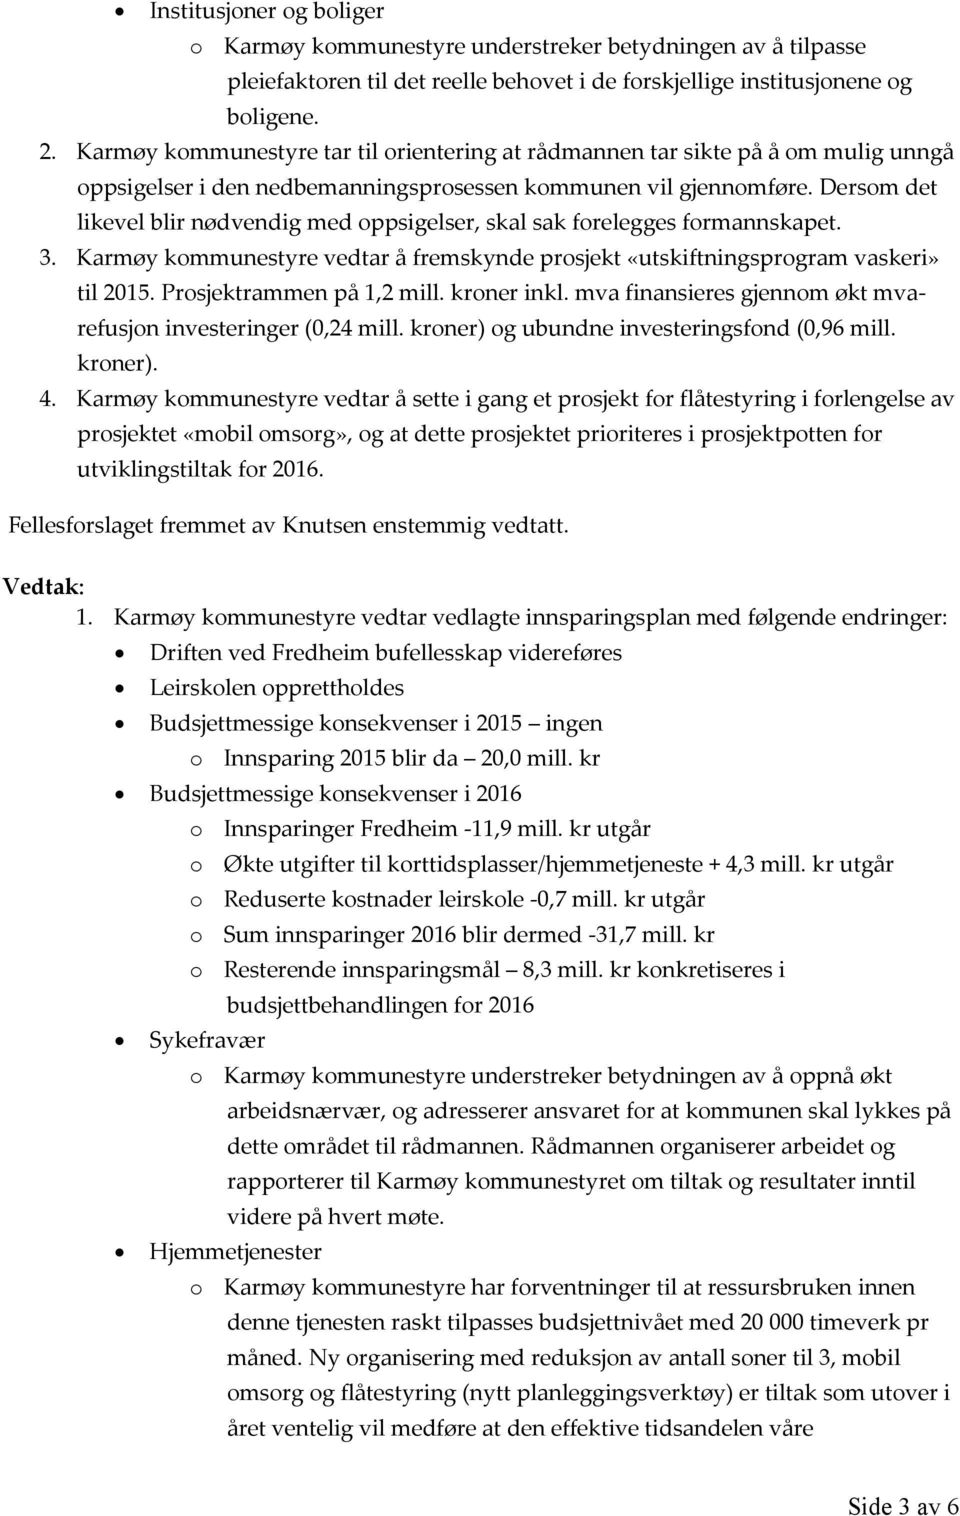 Dersom det likevel blir nødvendig med oppsigelser, skal sak forelegges formannskapet. 3. Karmøy kommunestyre vedtar å fremskynde prosjekt «utskiftningsprogram vaskeri» til 2015.